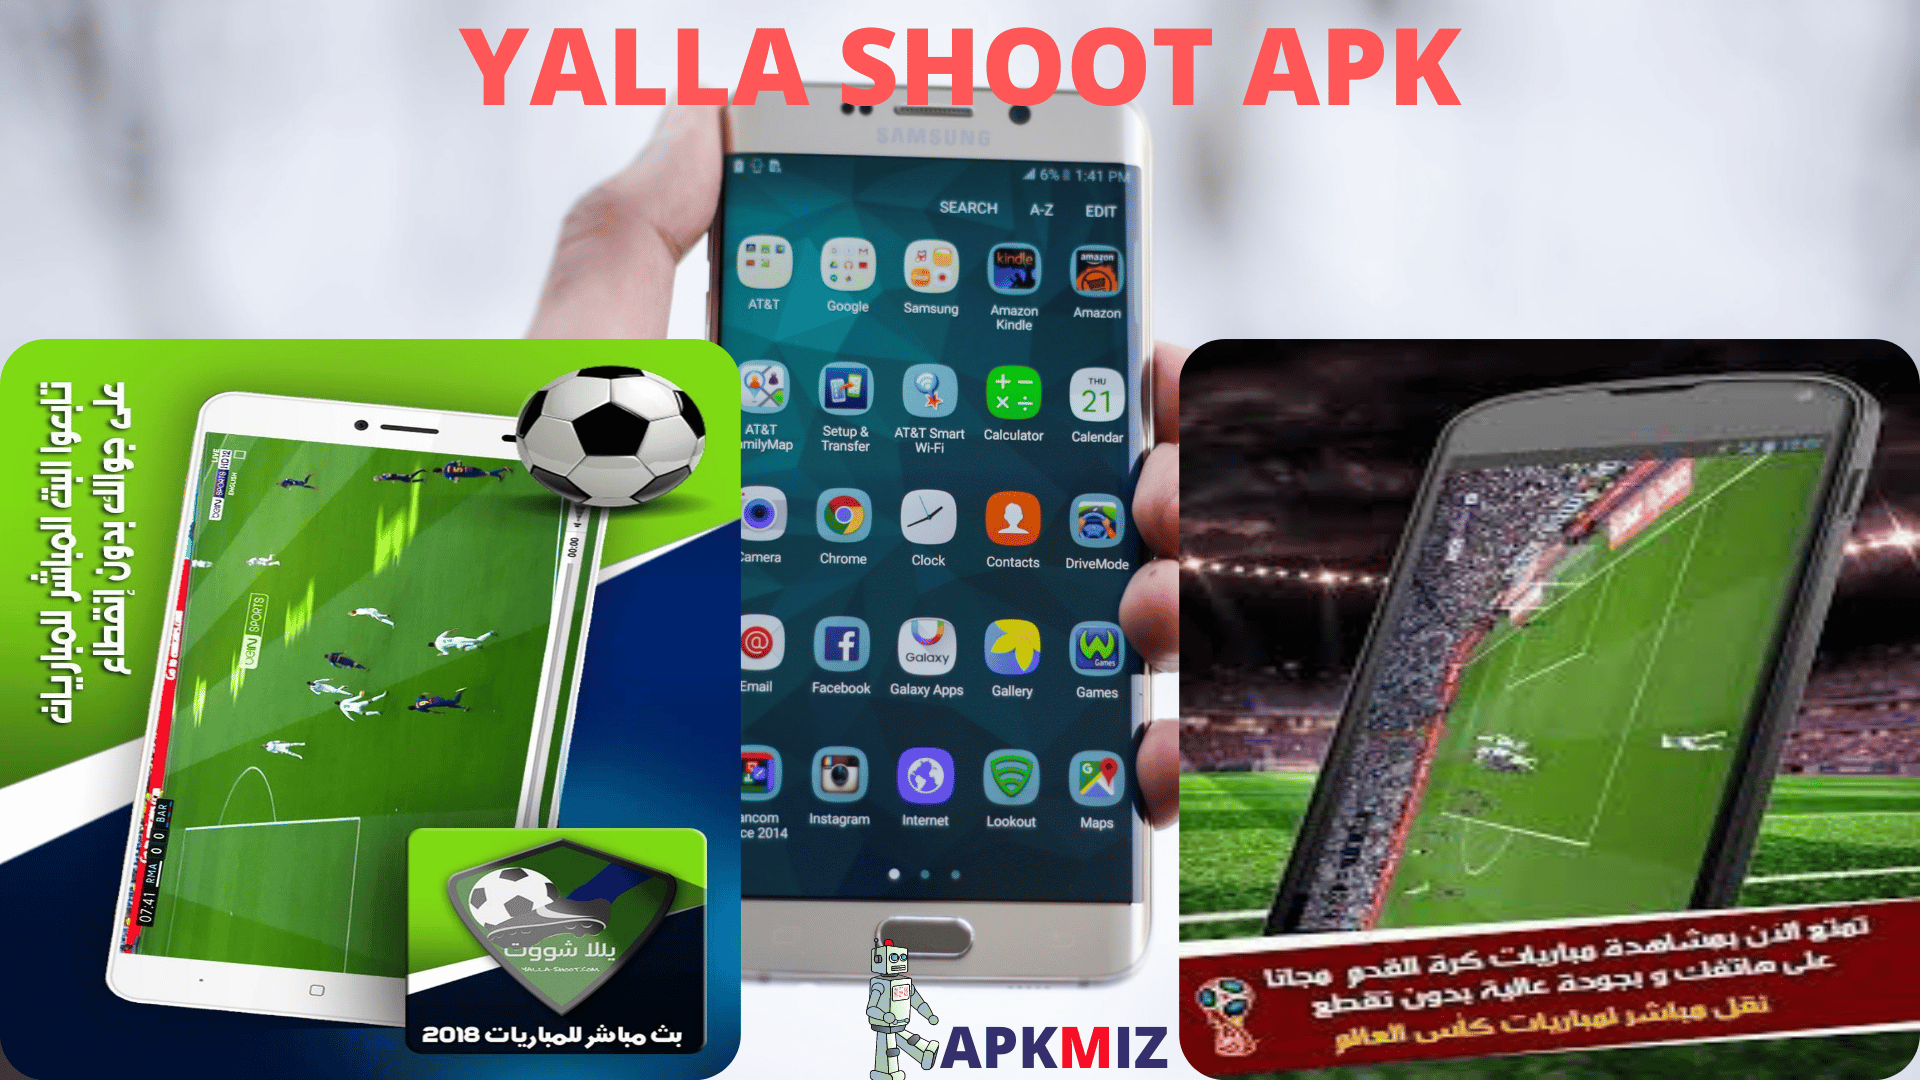 Yalla Shoot Apk